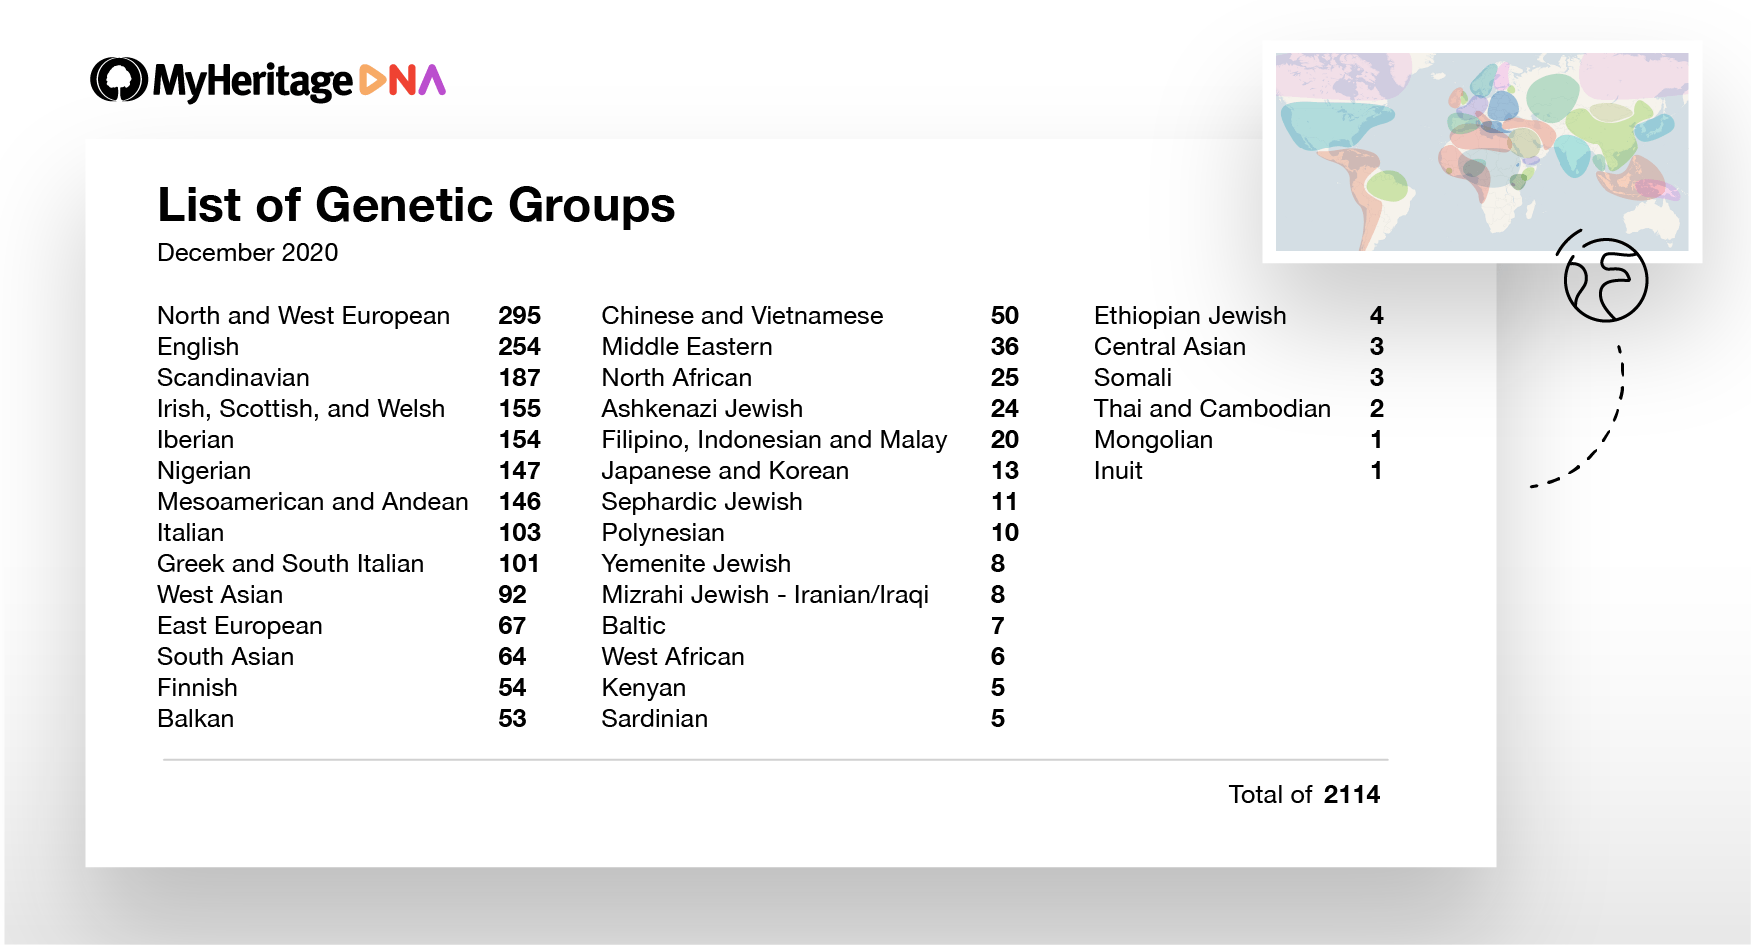 Ejemplo de una amplia gama de etnias y grupos genéticos mostrados para un usuario en MyHeritage (Haga clic para ampliar).